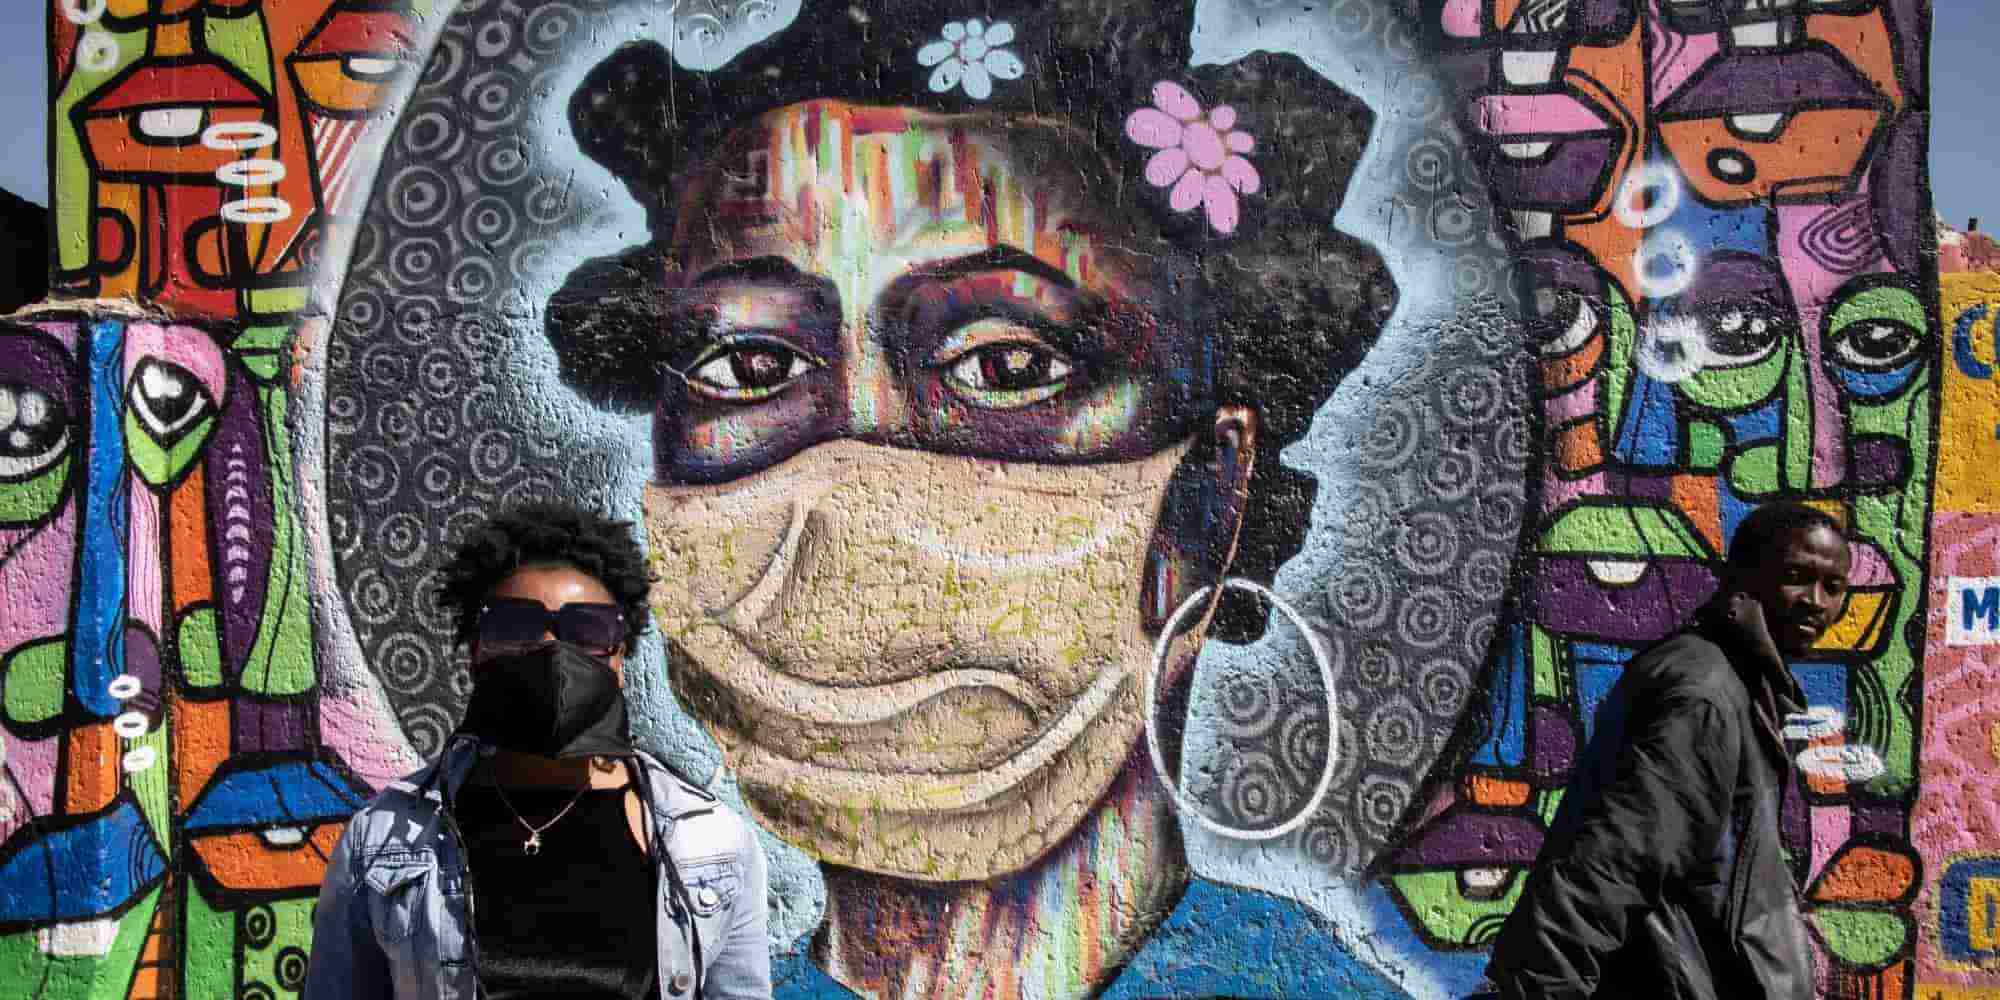 Δύο άνθρωποι με μάσκες στην Αφρική περνούν μπροστά από ένα γκράφιτι